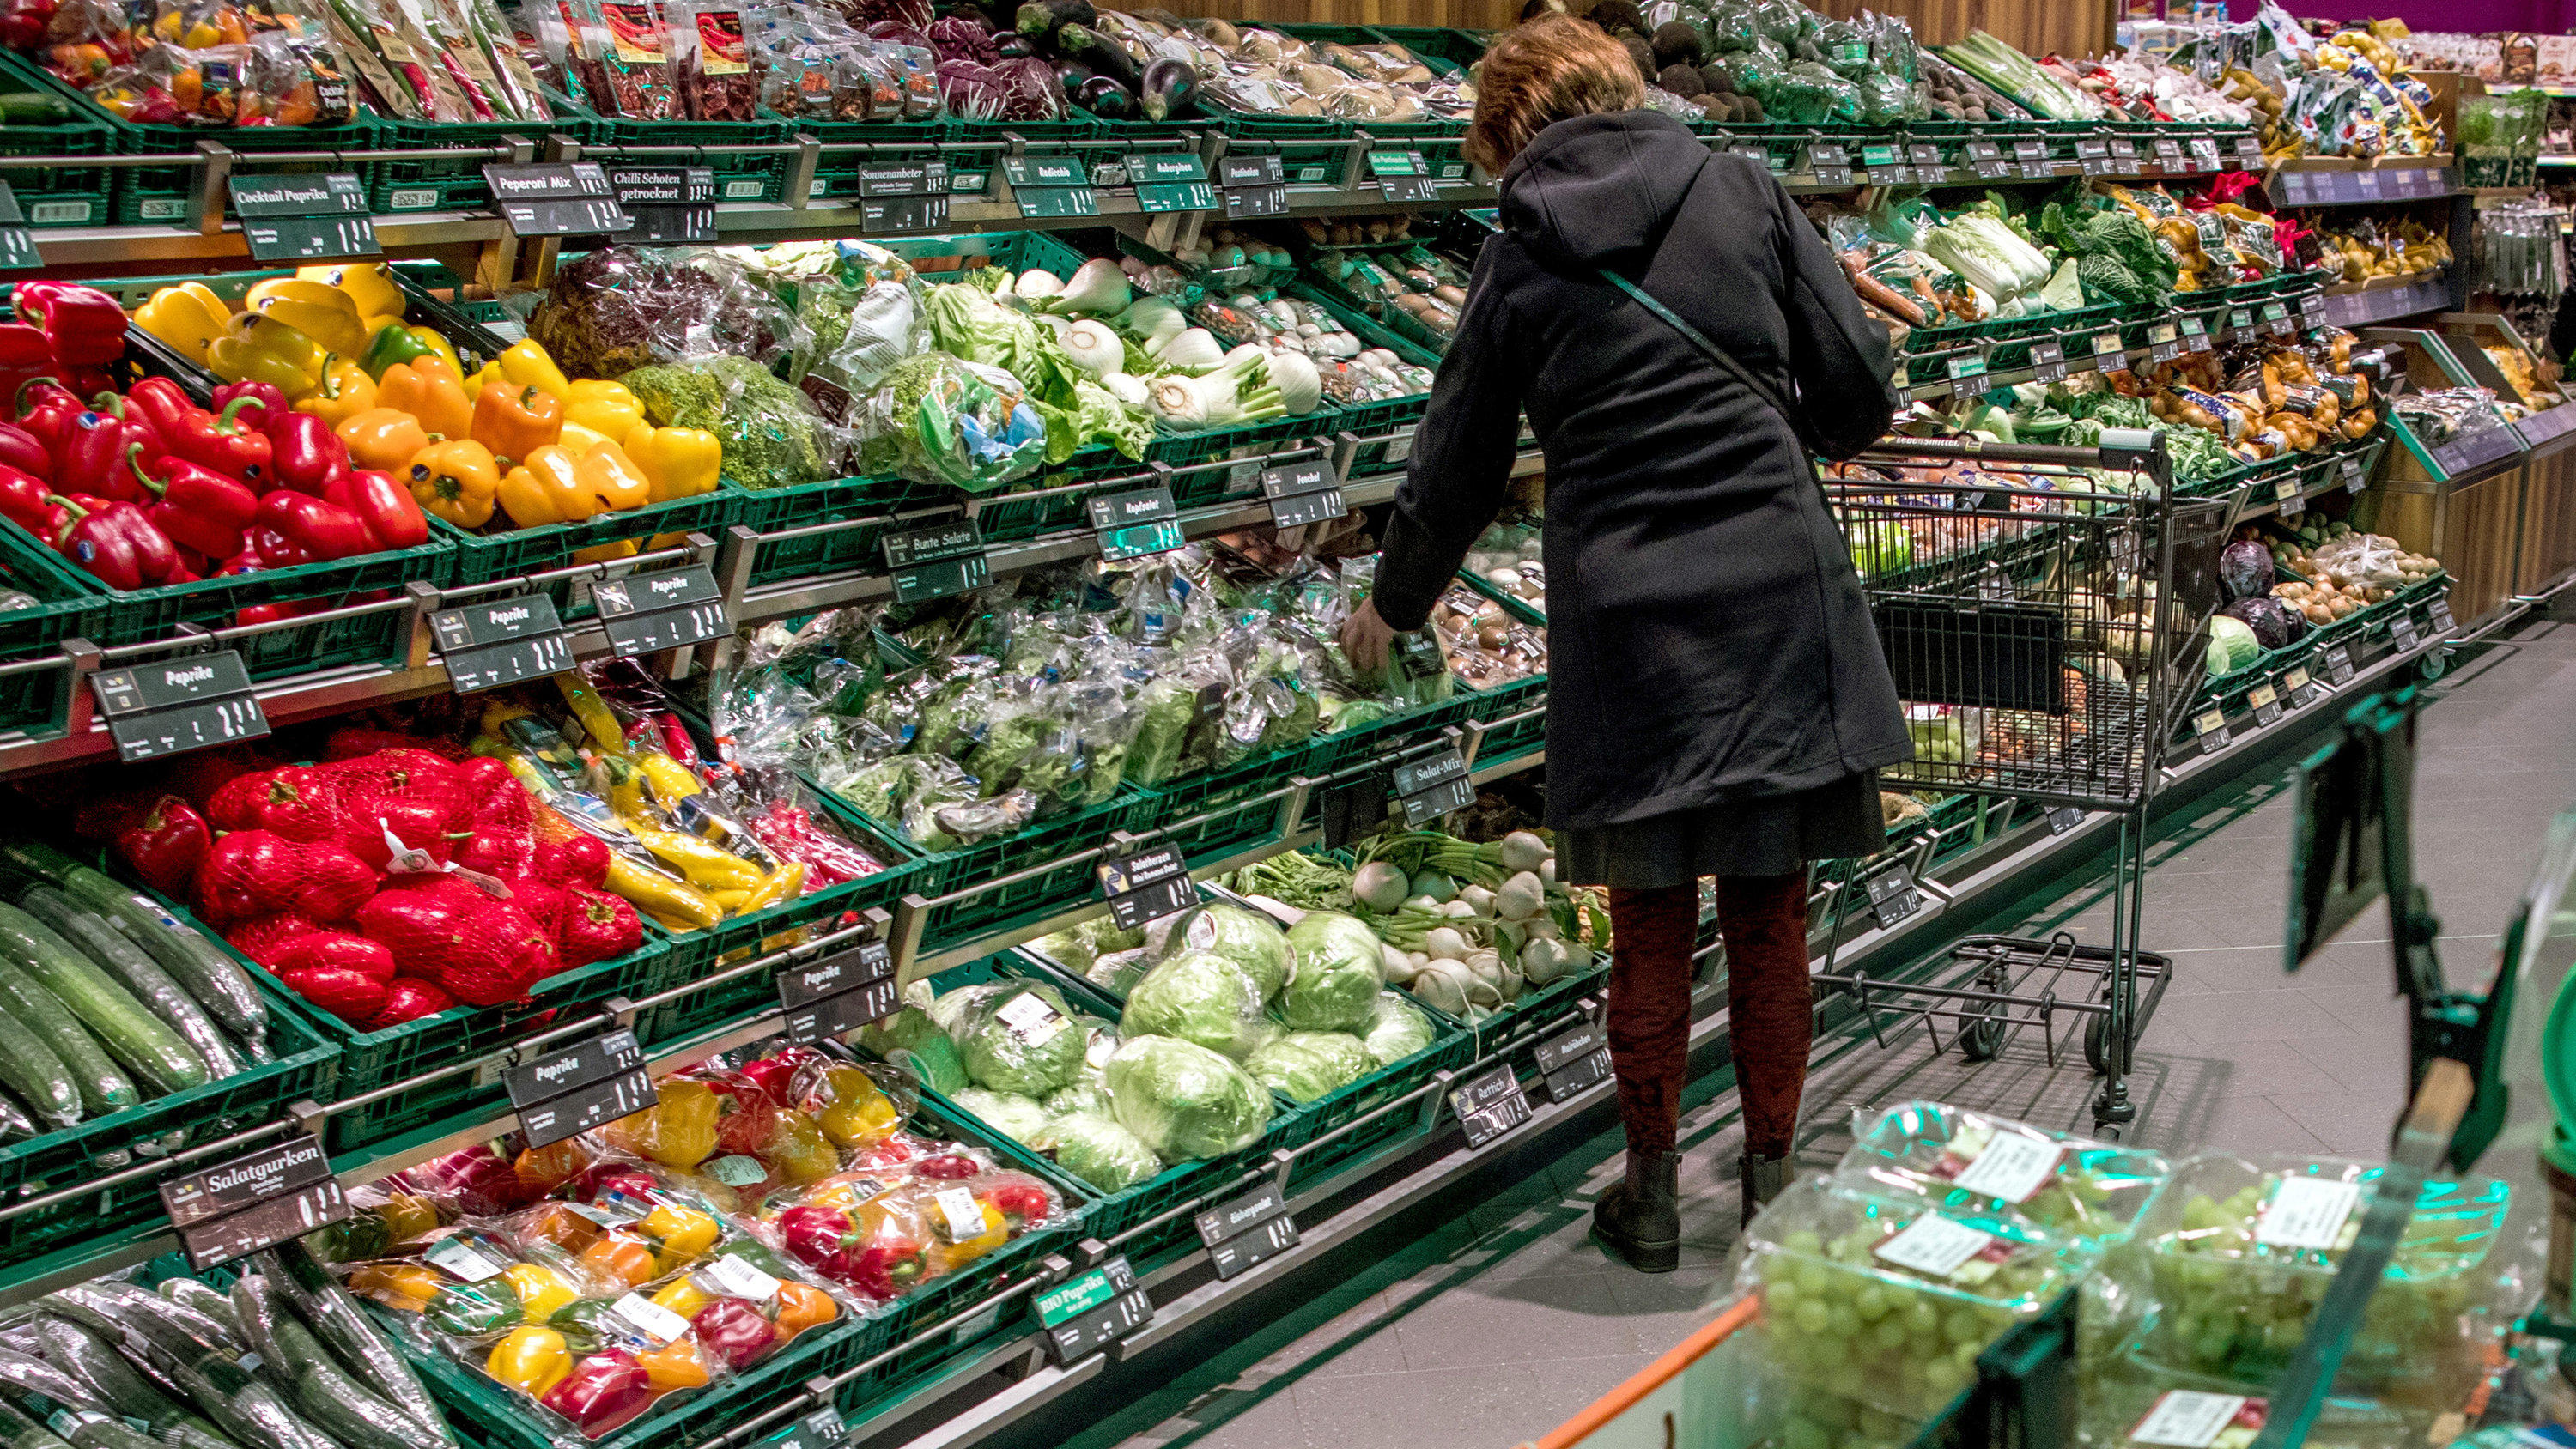 ARCHIV - 30.11.2017, Mecklenburg-Vorpommern, Schwerin: In den Regalen eines Supermarkts liegen Obst und Gemüse. (Zu dpa "Ministerpräsident Weil: Lebensmittel dürfen nicht zu günstig sein") Foto: Jens Büttner/zb/dpa +++ dpa-Bildfunk +++